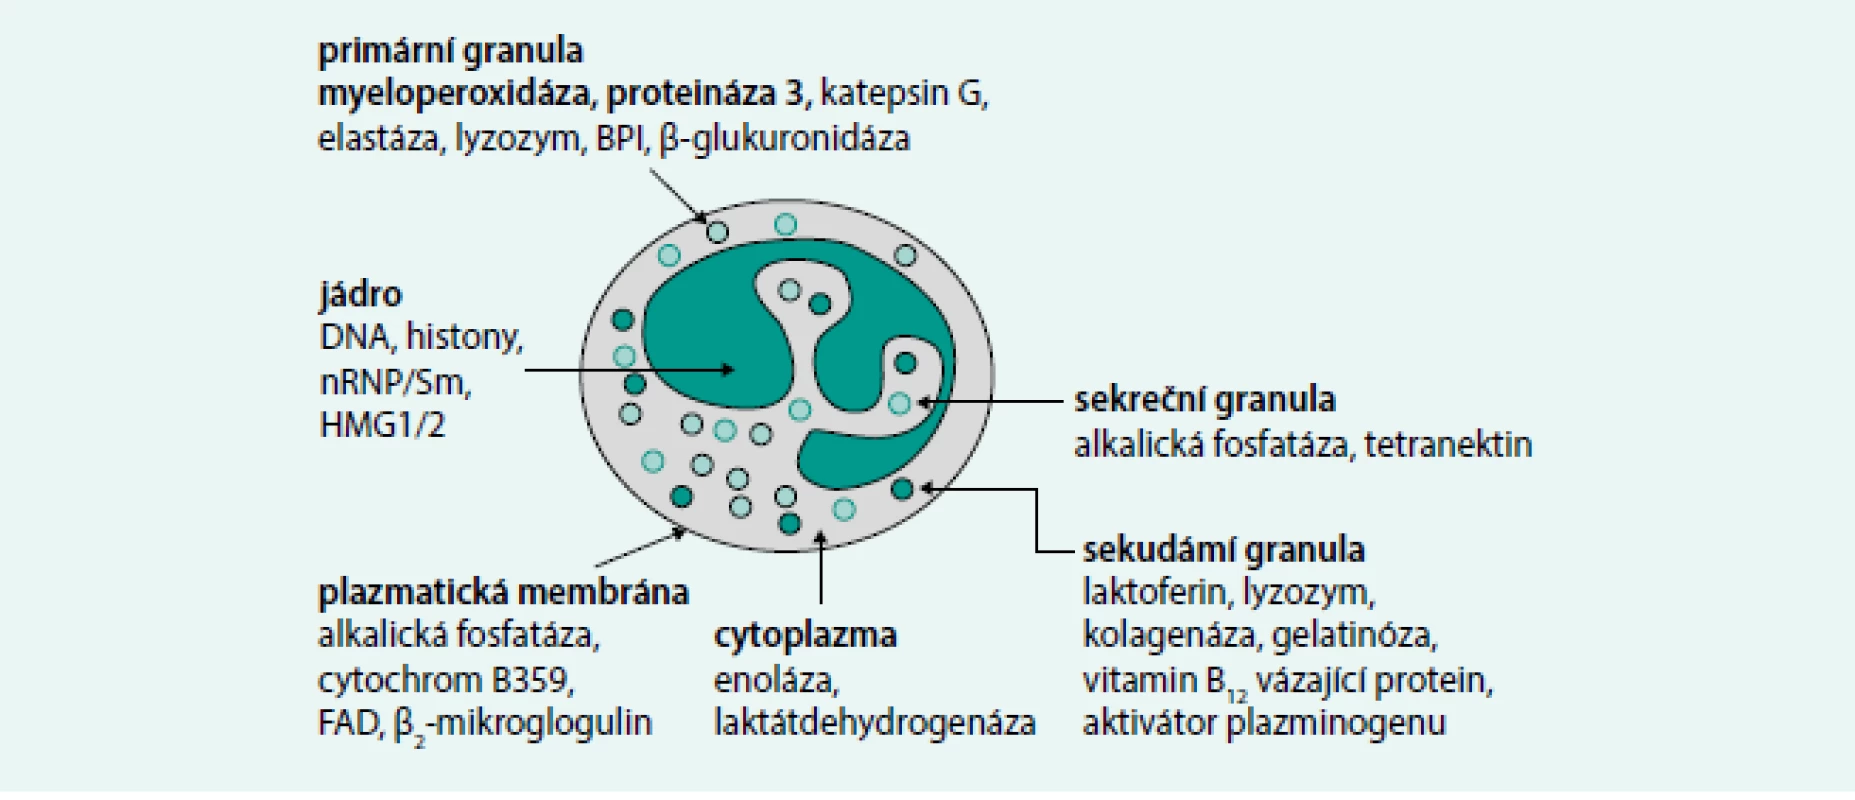 Neutrofilní granulocyt – obsah granulí a cíle autoprotilátek. Obrázek ukazuje cílové antigeny u neutrofilního granulocytu, nicméně autoprotilátky ANCA jsou namířeny i proti strukturám jiných buněk, například lyzosomů monocytů.